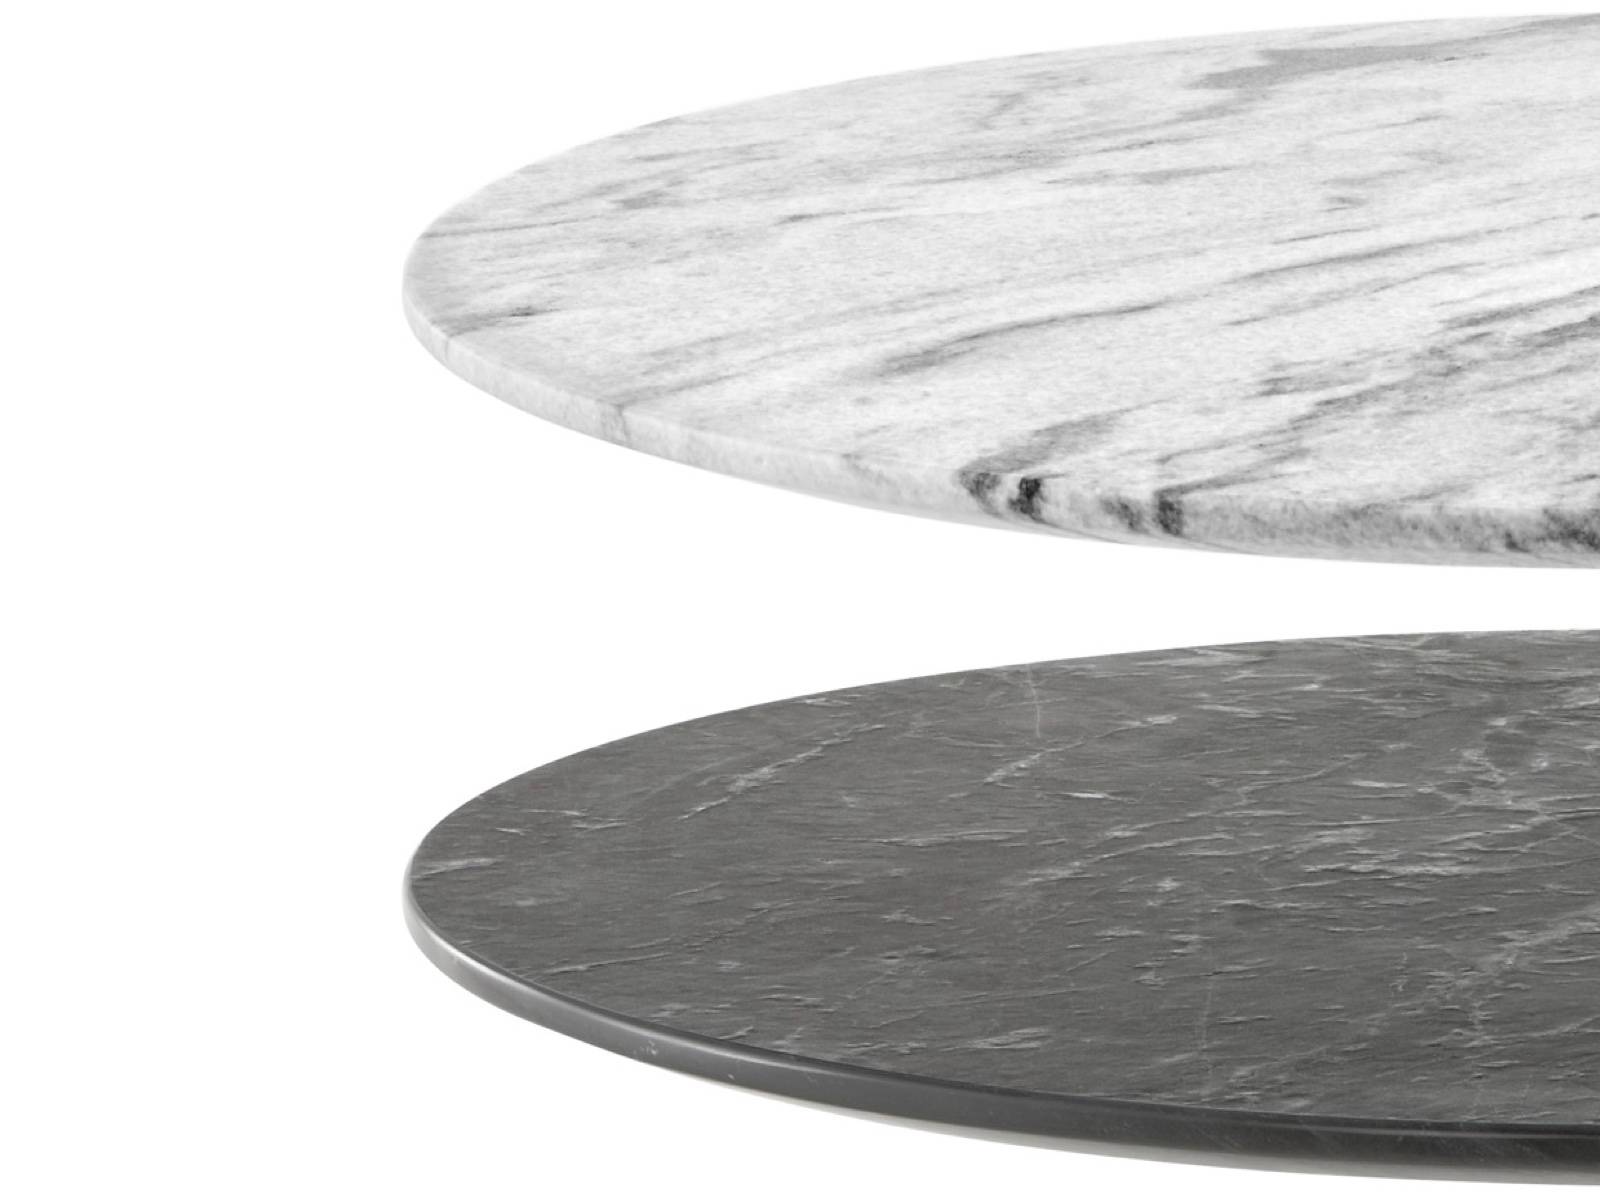 Nelsonペデスタル屋外テーブルで利用可能な2つの石のトップのクローズアップ、白と黒の1つ。